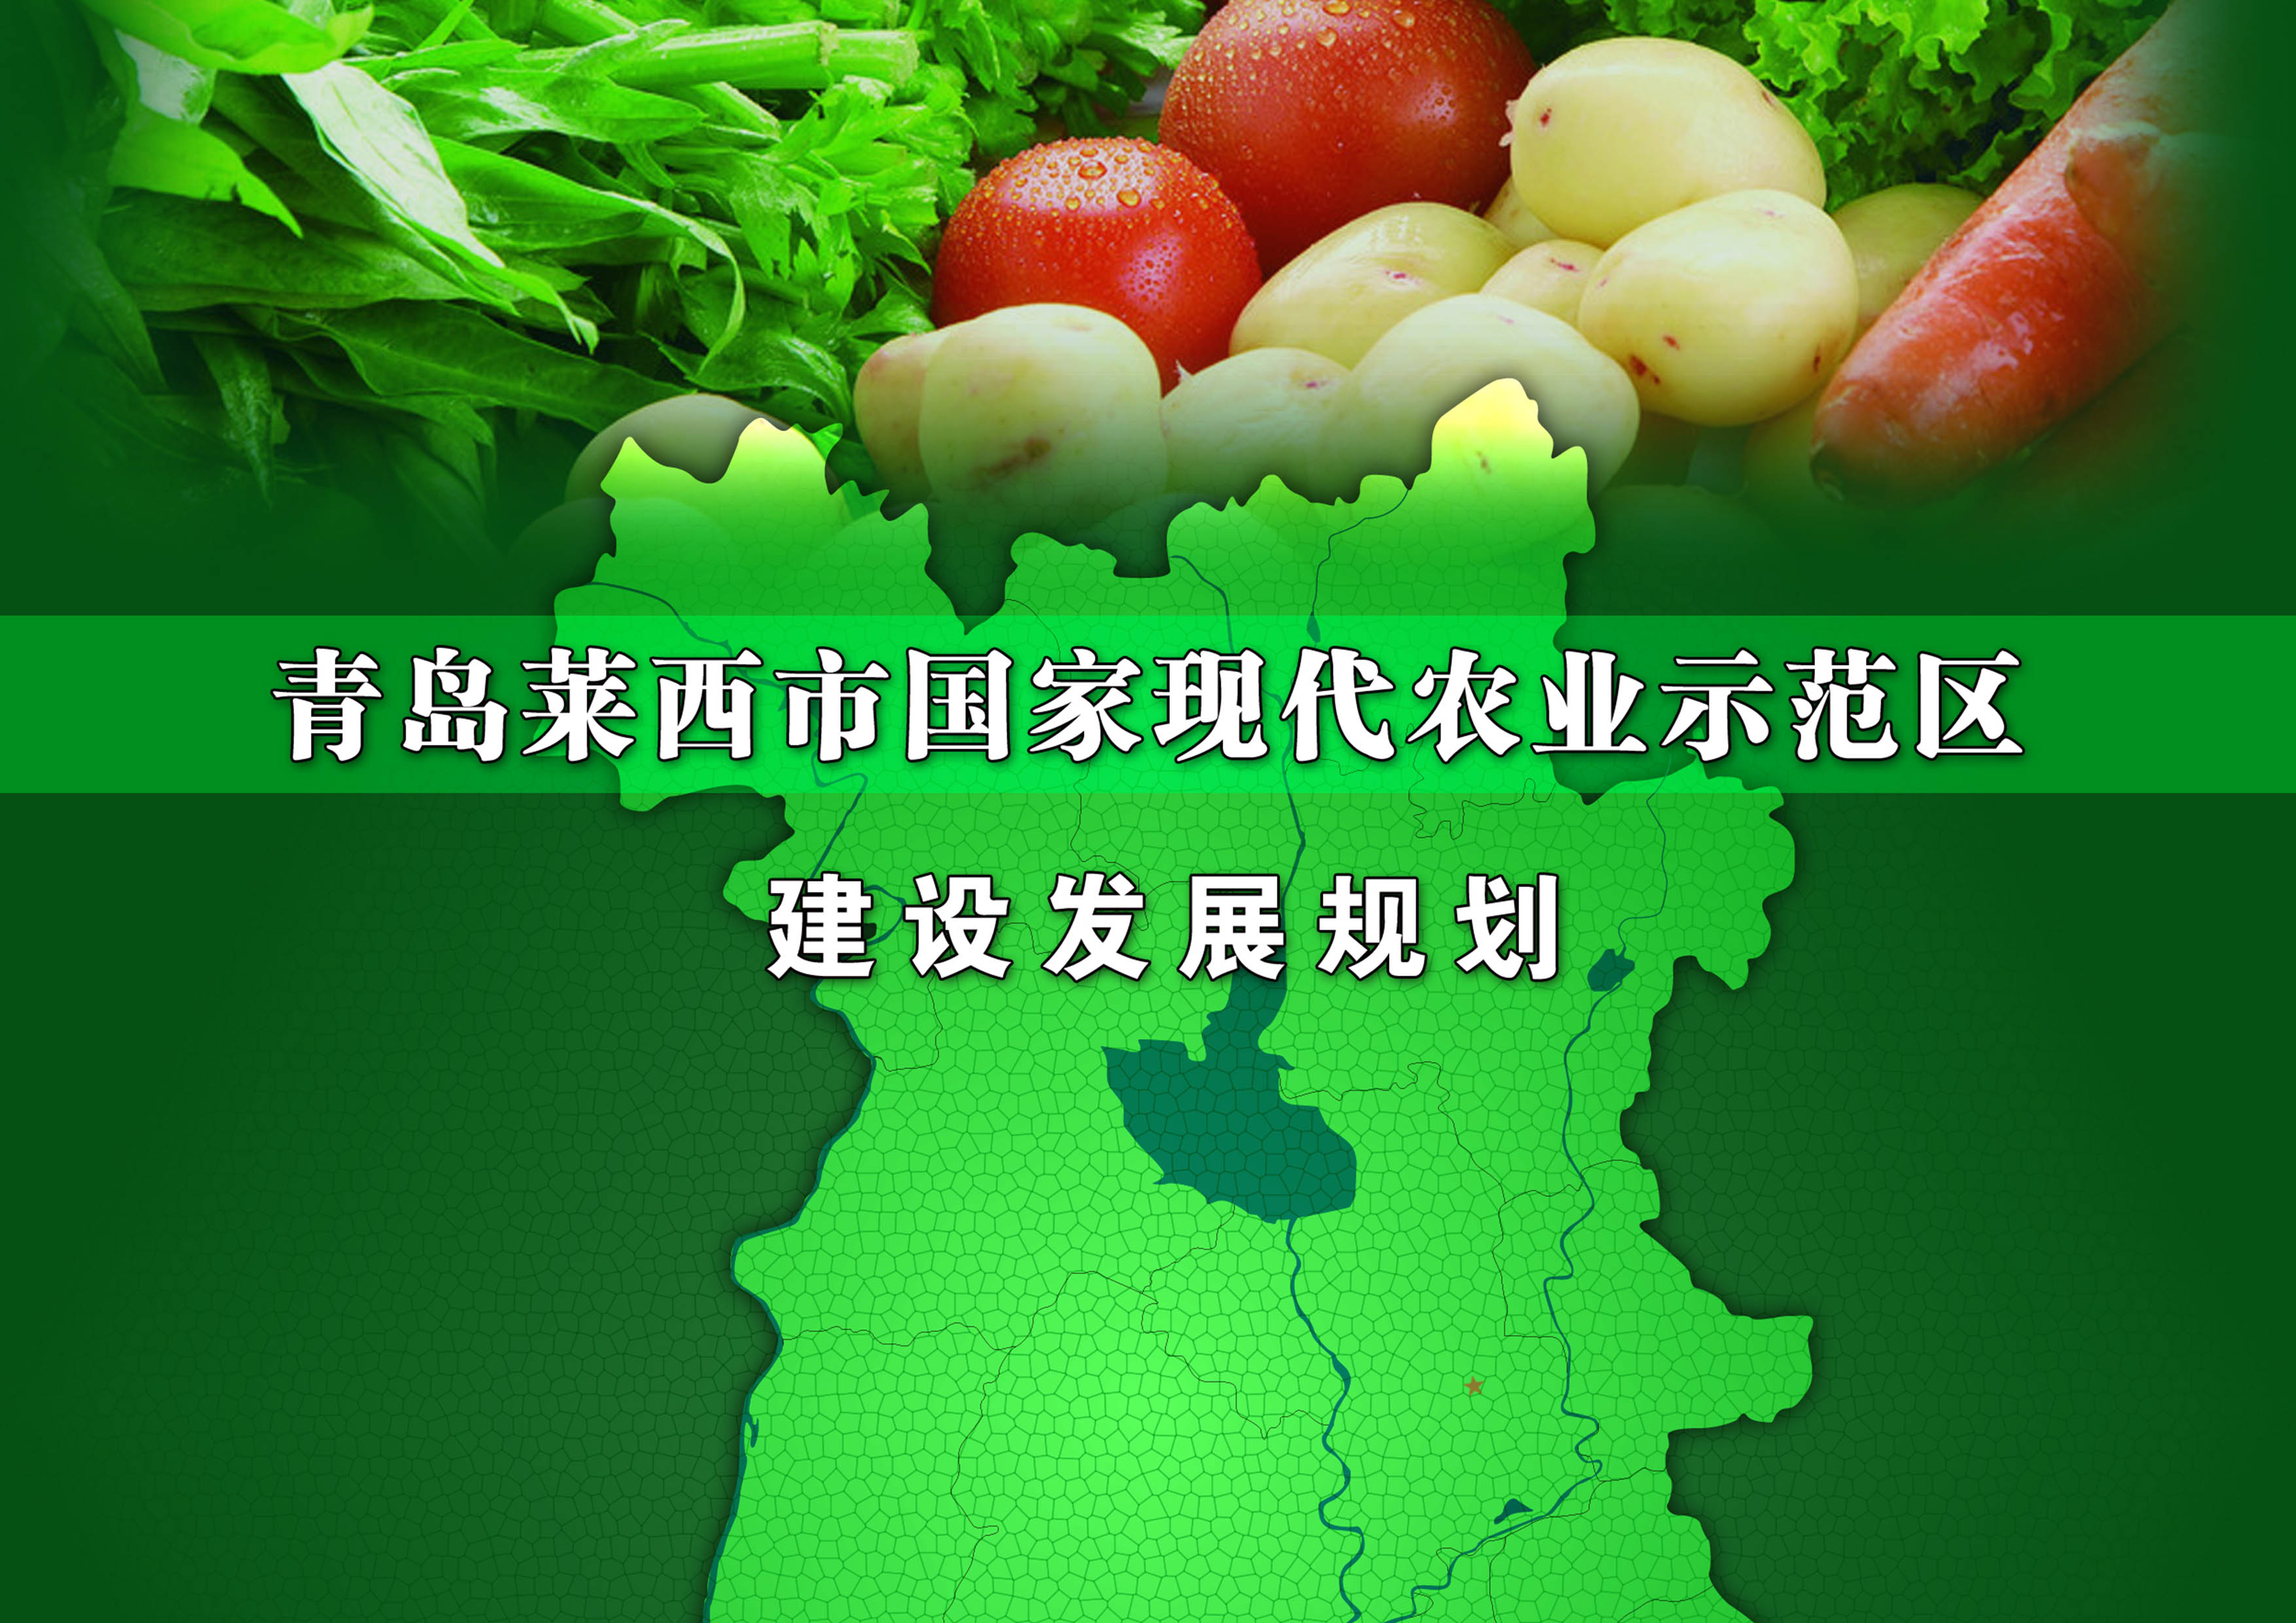 青島萊西市國家現代農業示范區建設發展規劃